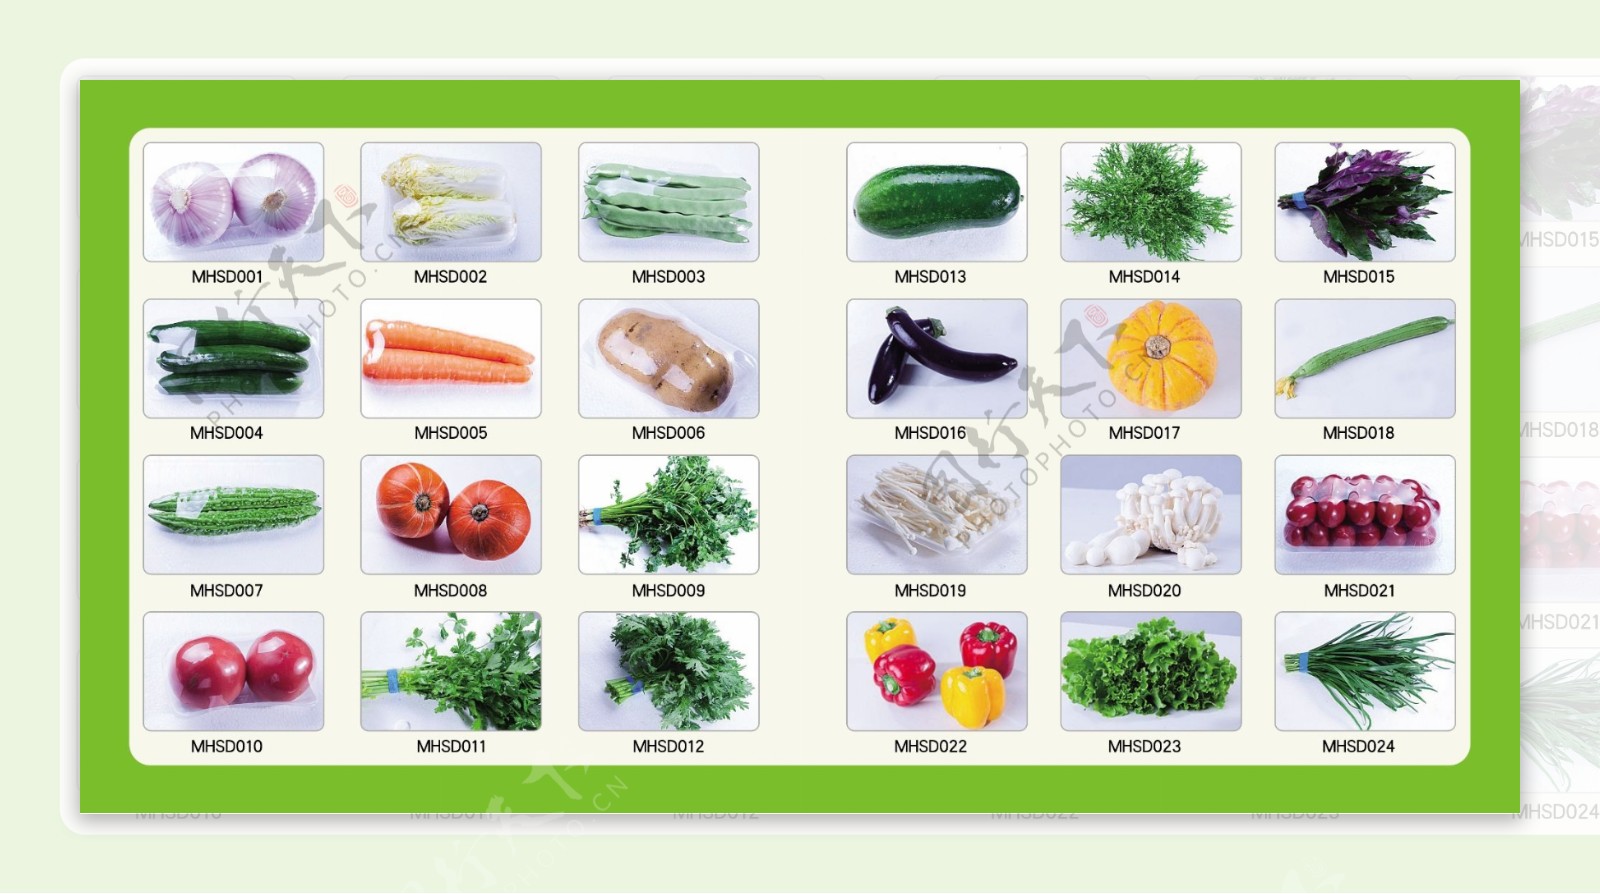 有机蔬菜会员使用手册图片